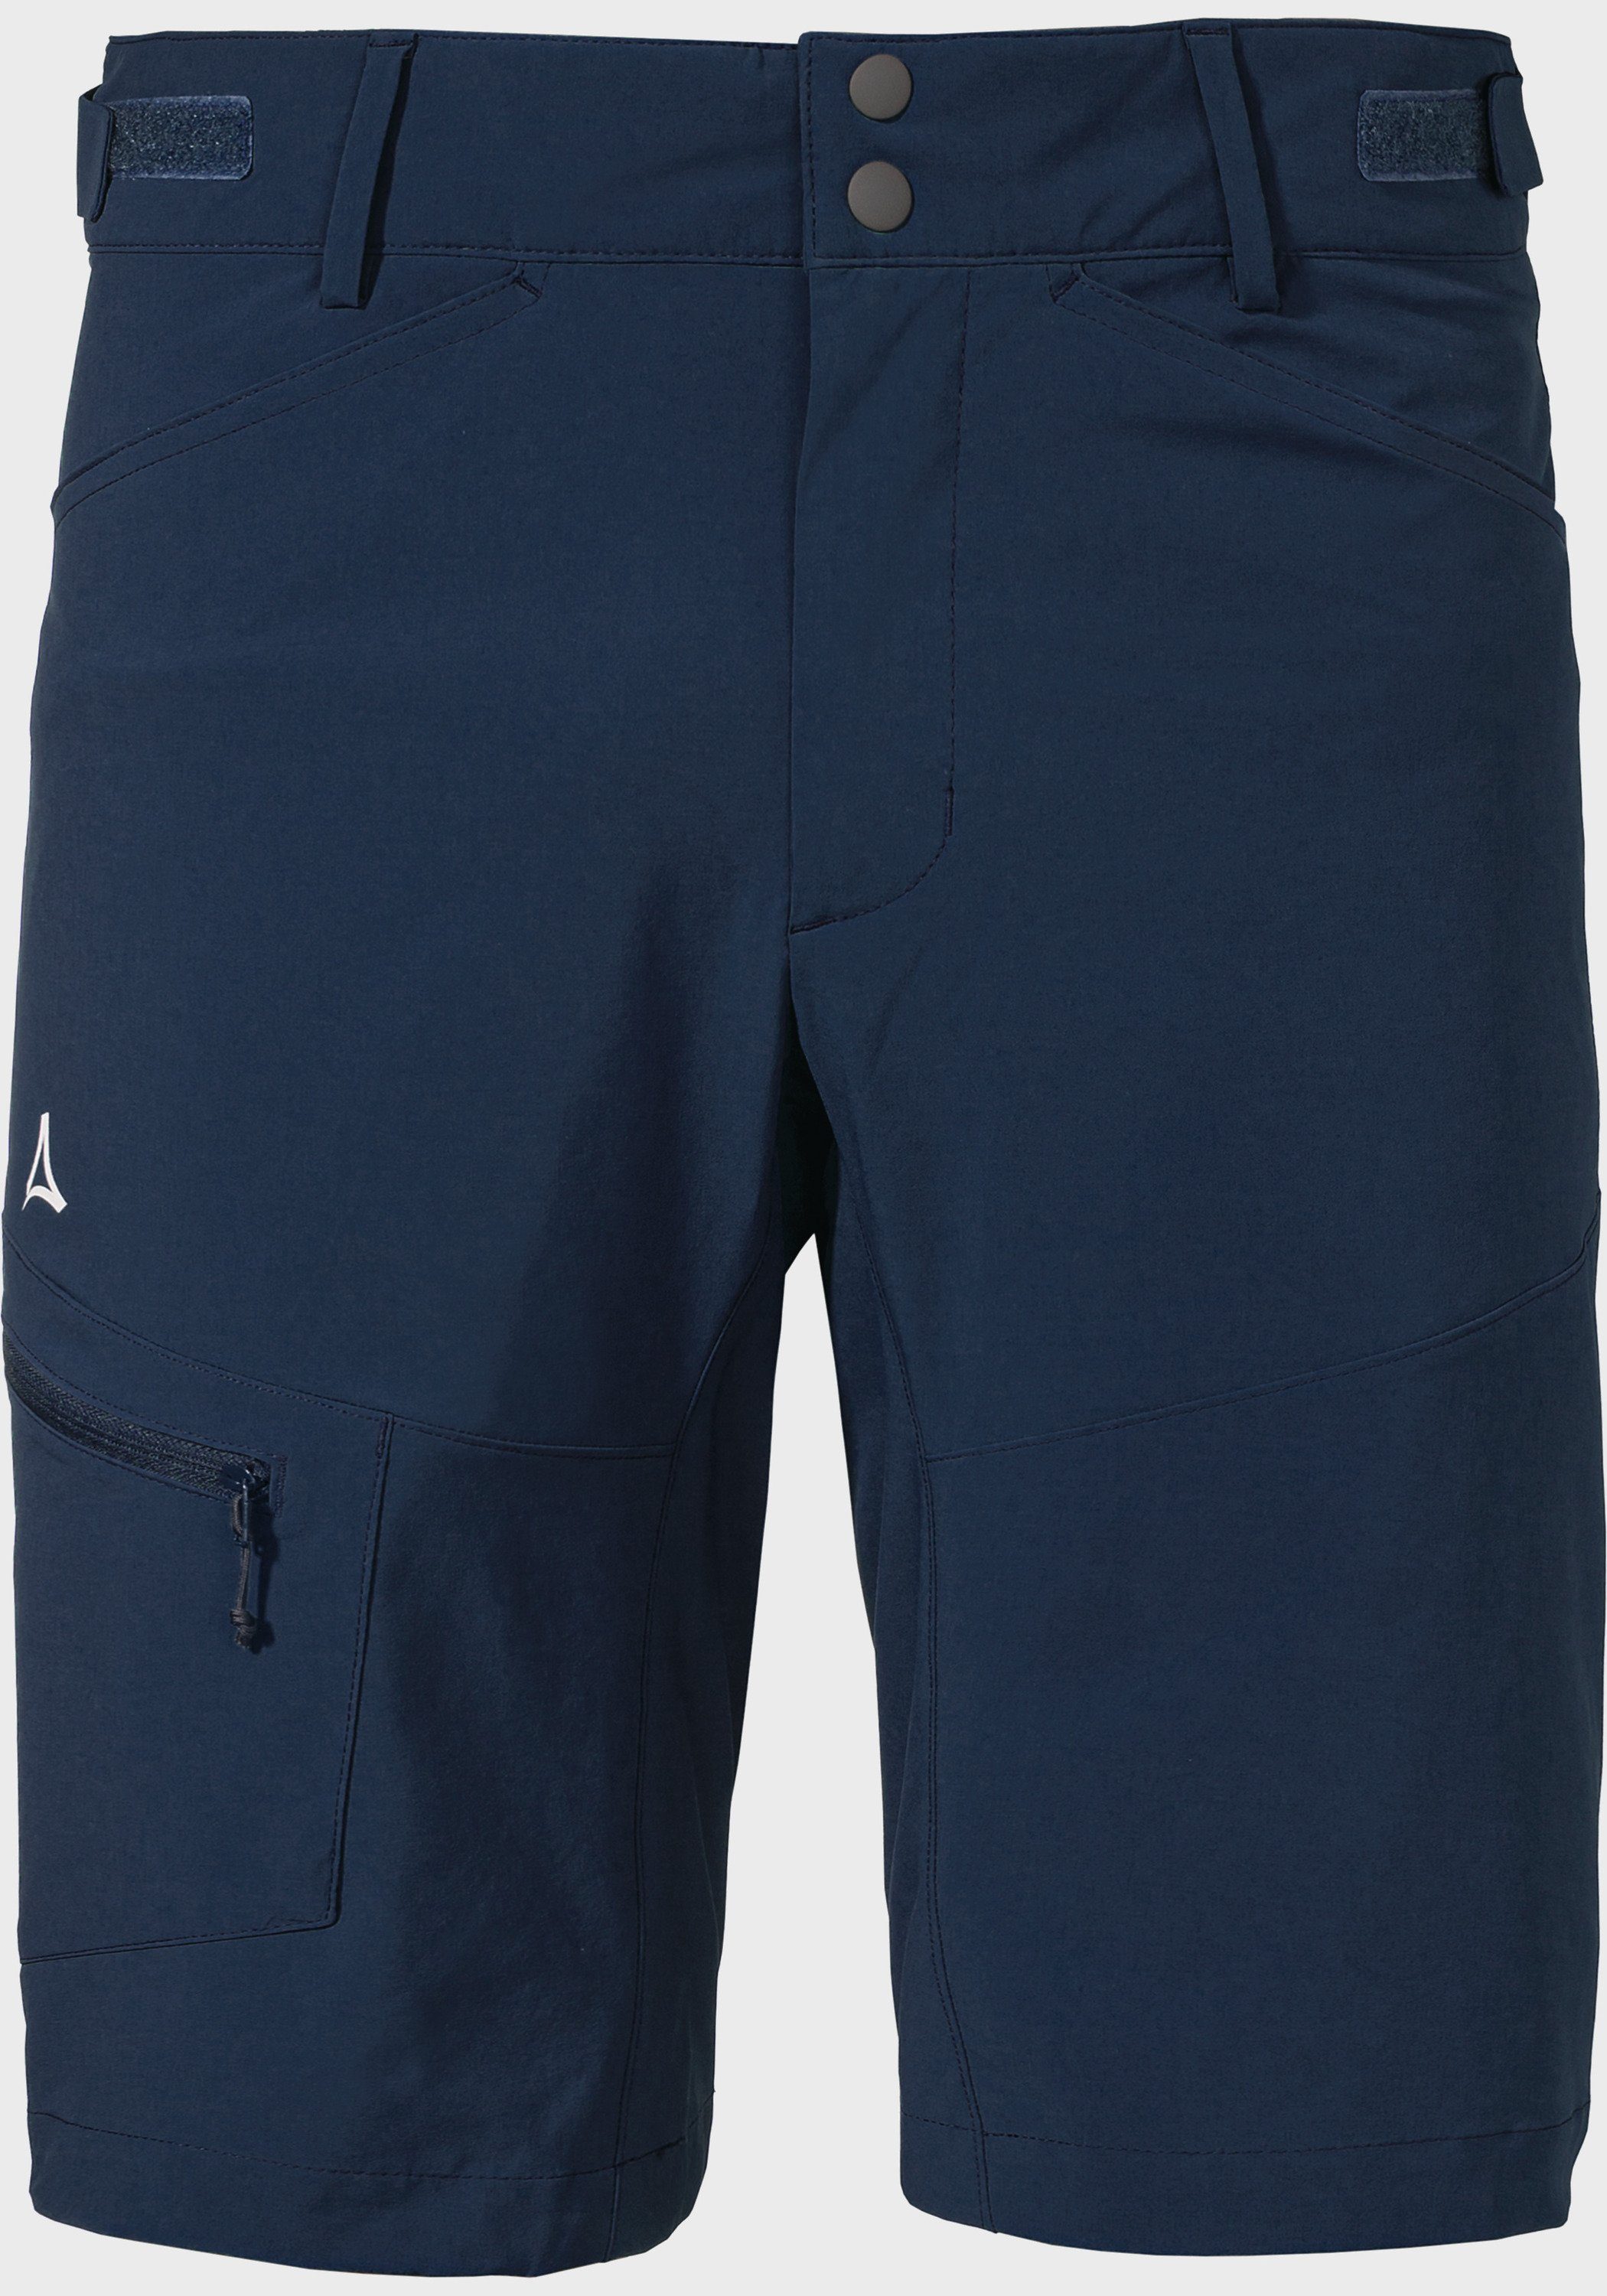 Shorts M Shorts Schöffel Algarve blau